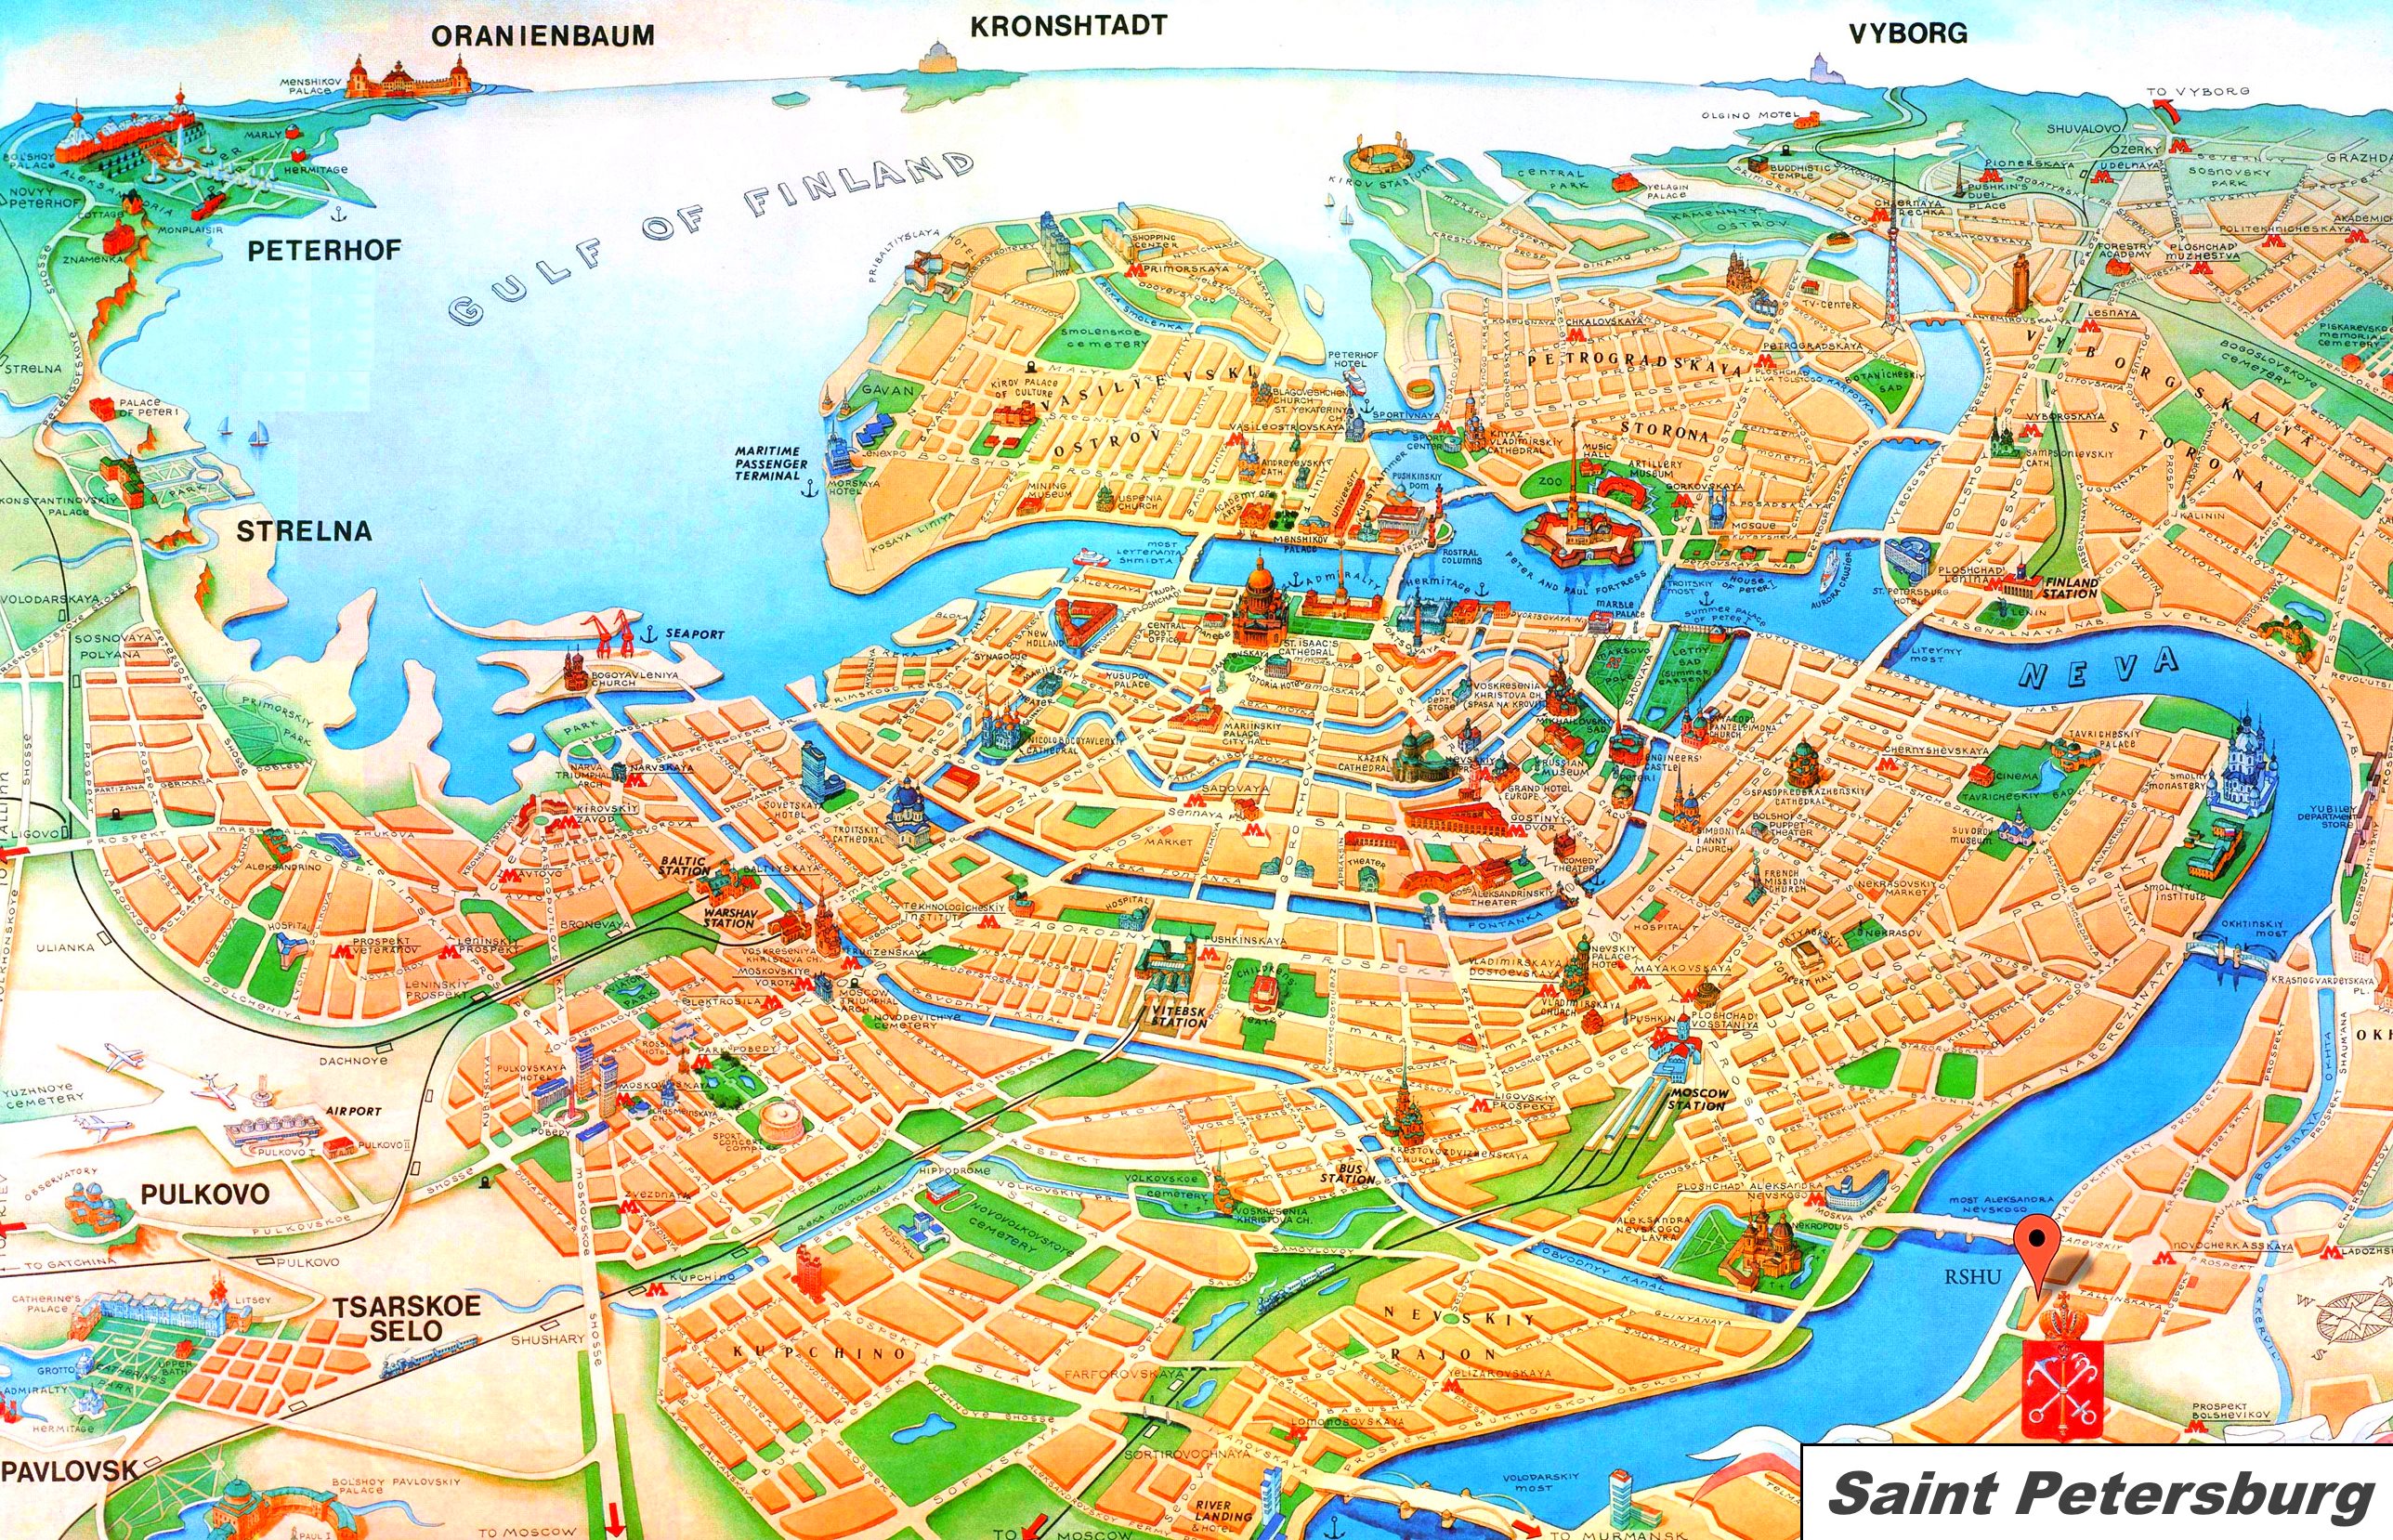 Stadtplan von St. Petersburg, Russland inklusive Sehenswürdigkeiten, bereitgestellt von http://ontheworldmap.com